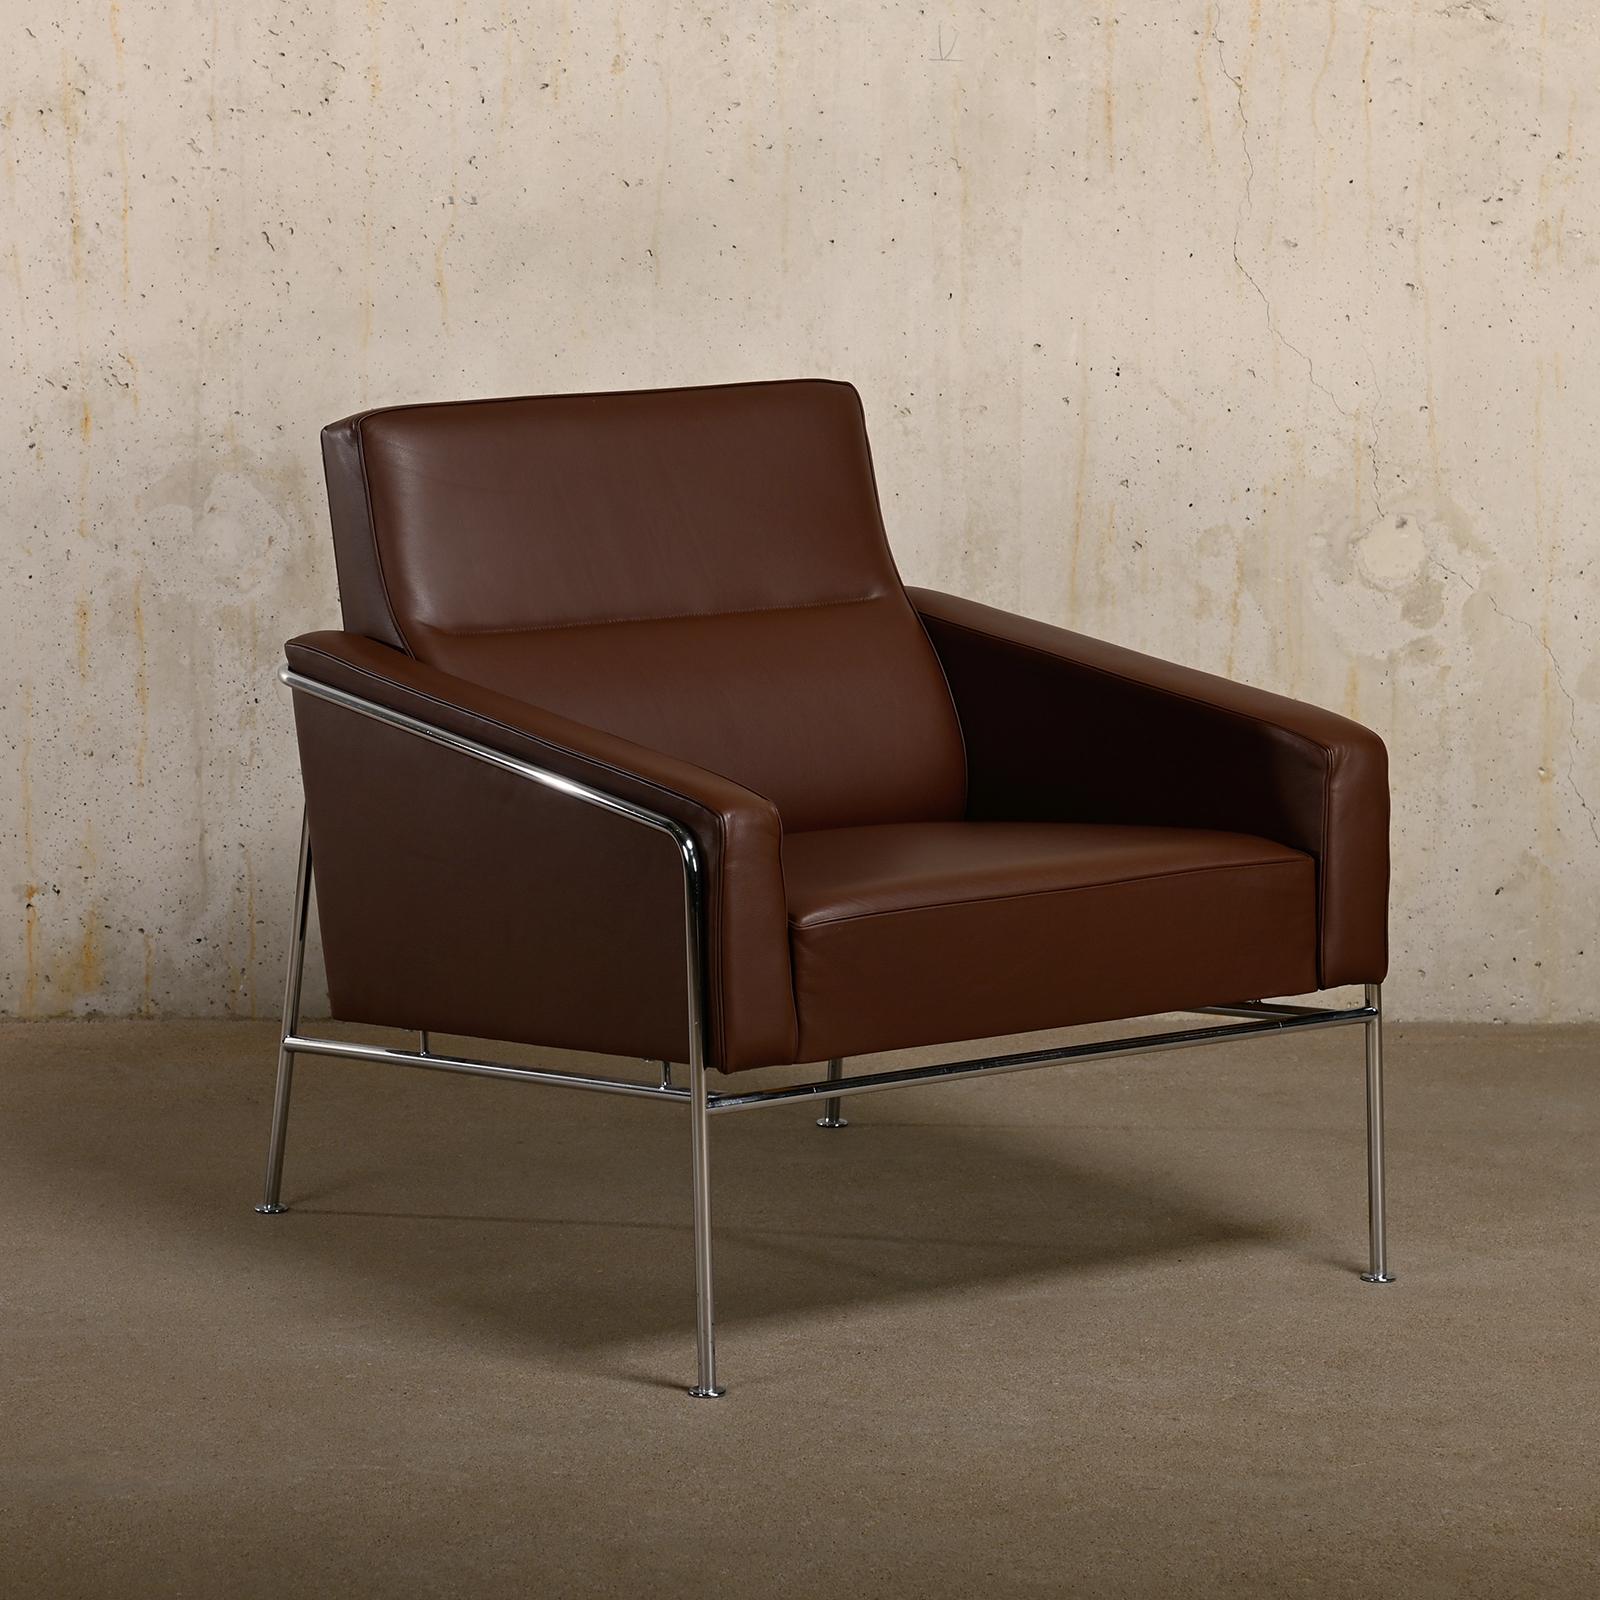 Dieser Lounge Chair wurde von Arne Jacobsen für das SAS Air Terminal entworfen, das an das SAS Royal Hotel Kopenhagen, Dänemark, angeschlossen ist. Diese Sessel werden von Fritz Hansen im Jahr 2008 hergestellt und sind mit Grace Leder in der Farbe